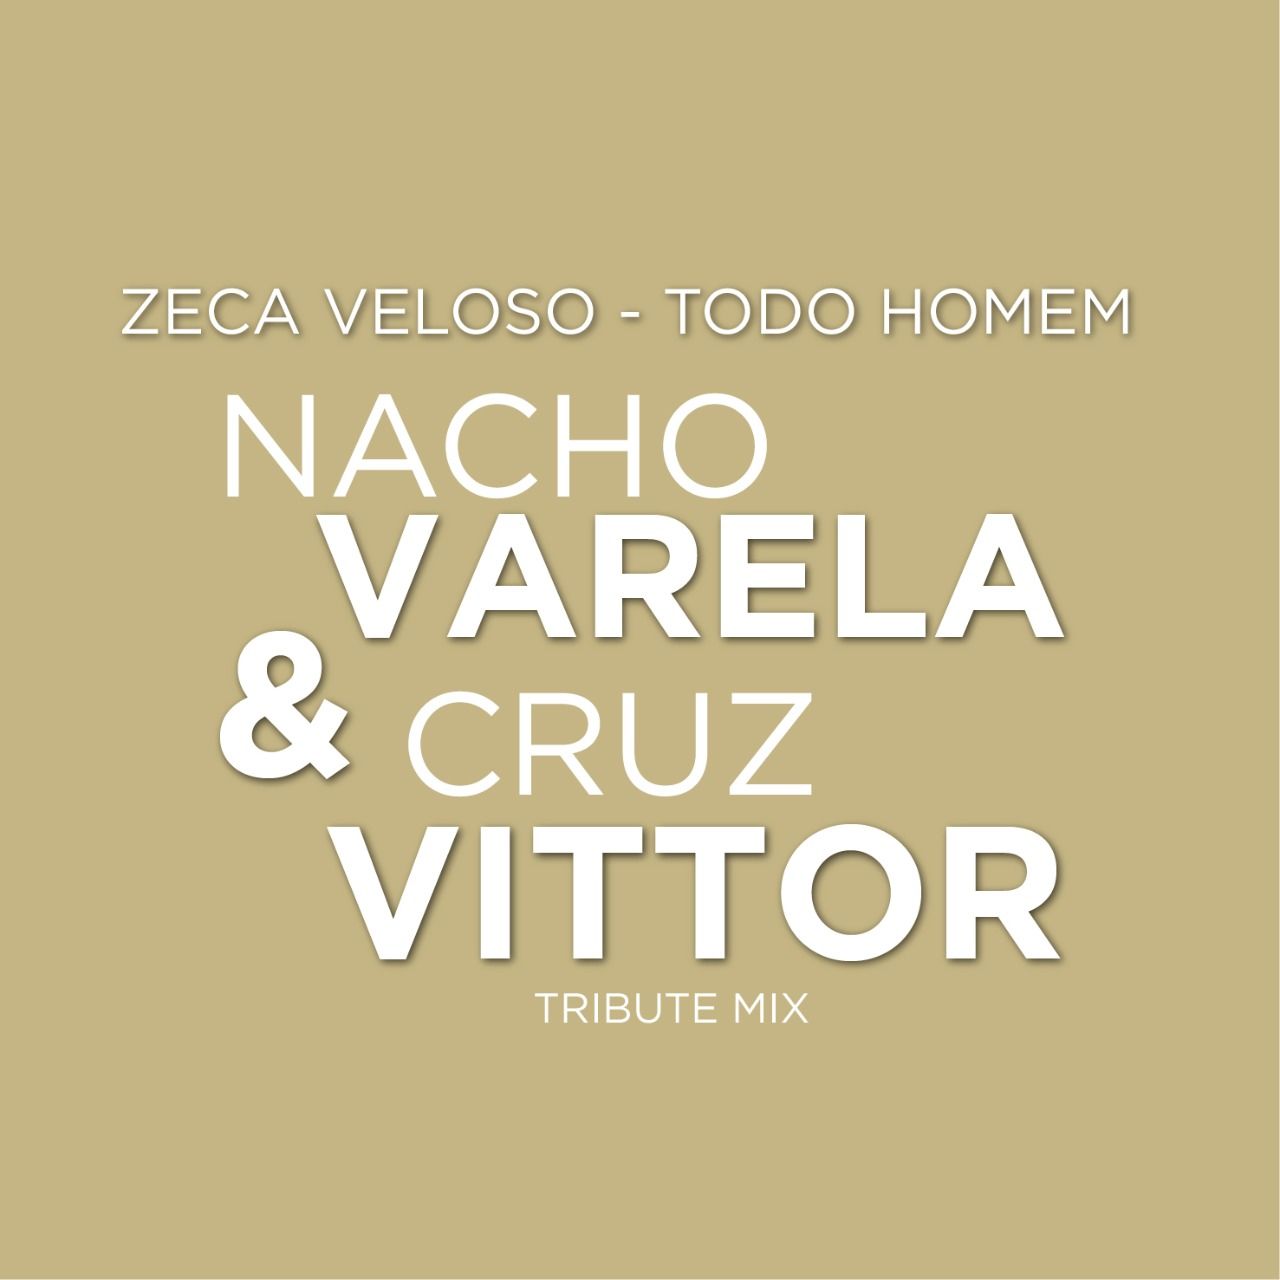 Stiahnuť ▼ Zeca Veloso - Todo Homem (Nacho Varela & Cruz Vittor Tribute Mix) [Free Download]